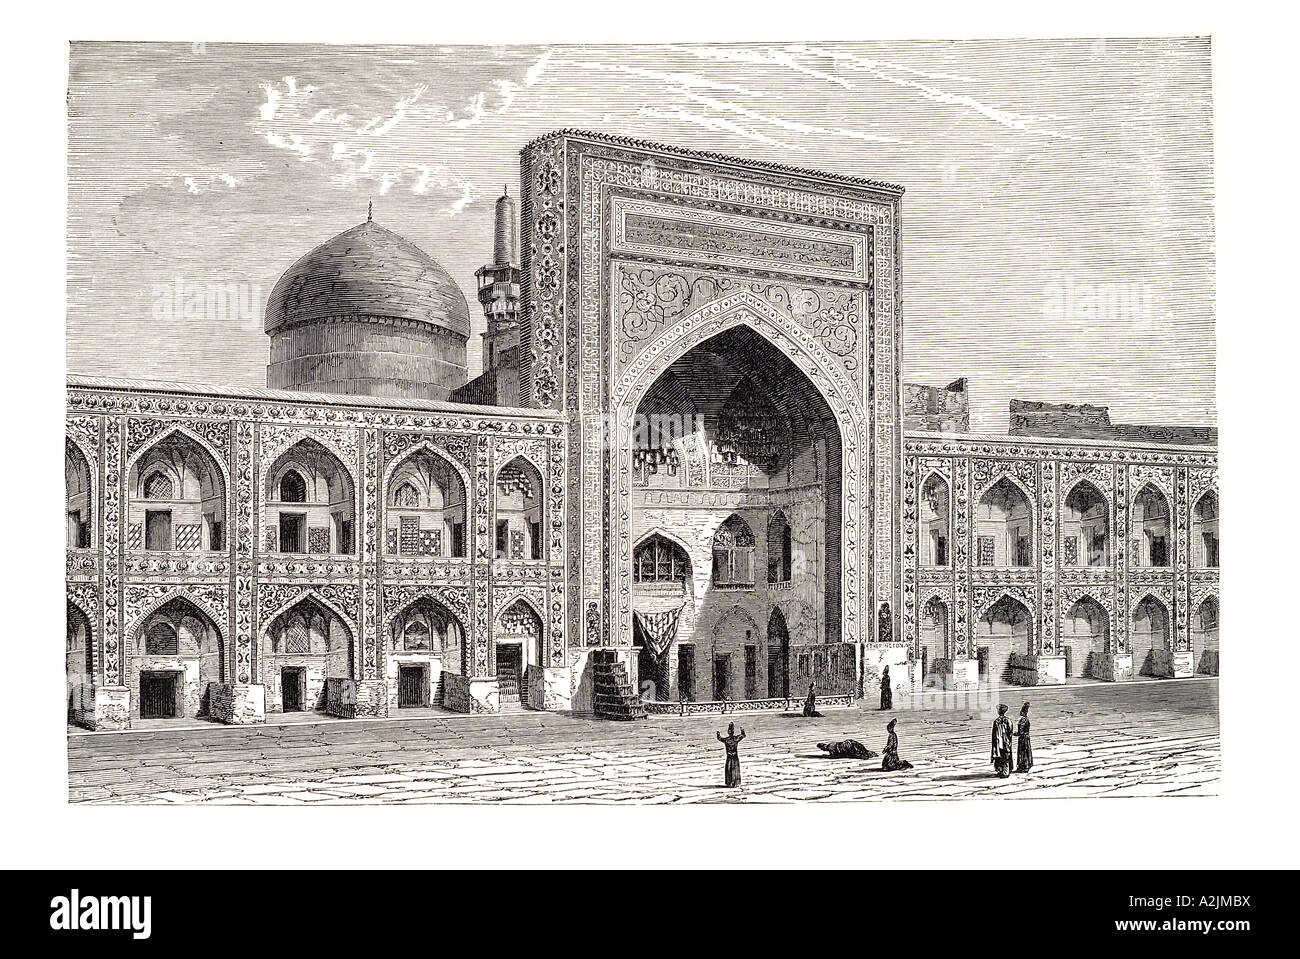 Masjid-i-Masjid-e Imam Shah, Isfahan, Iran iranische Iwan königlichen Madrasa Persien Islam islamische muslimische Religion verzierten Kacheln Fliesen Stockfoto